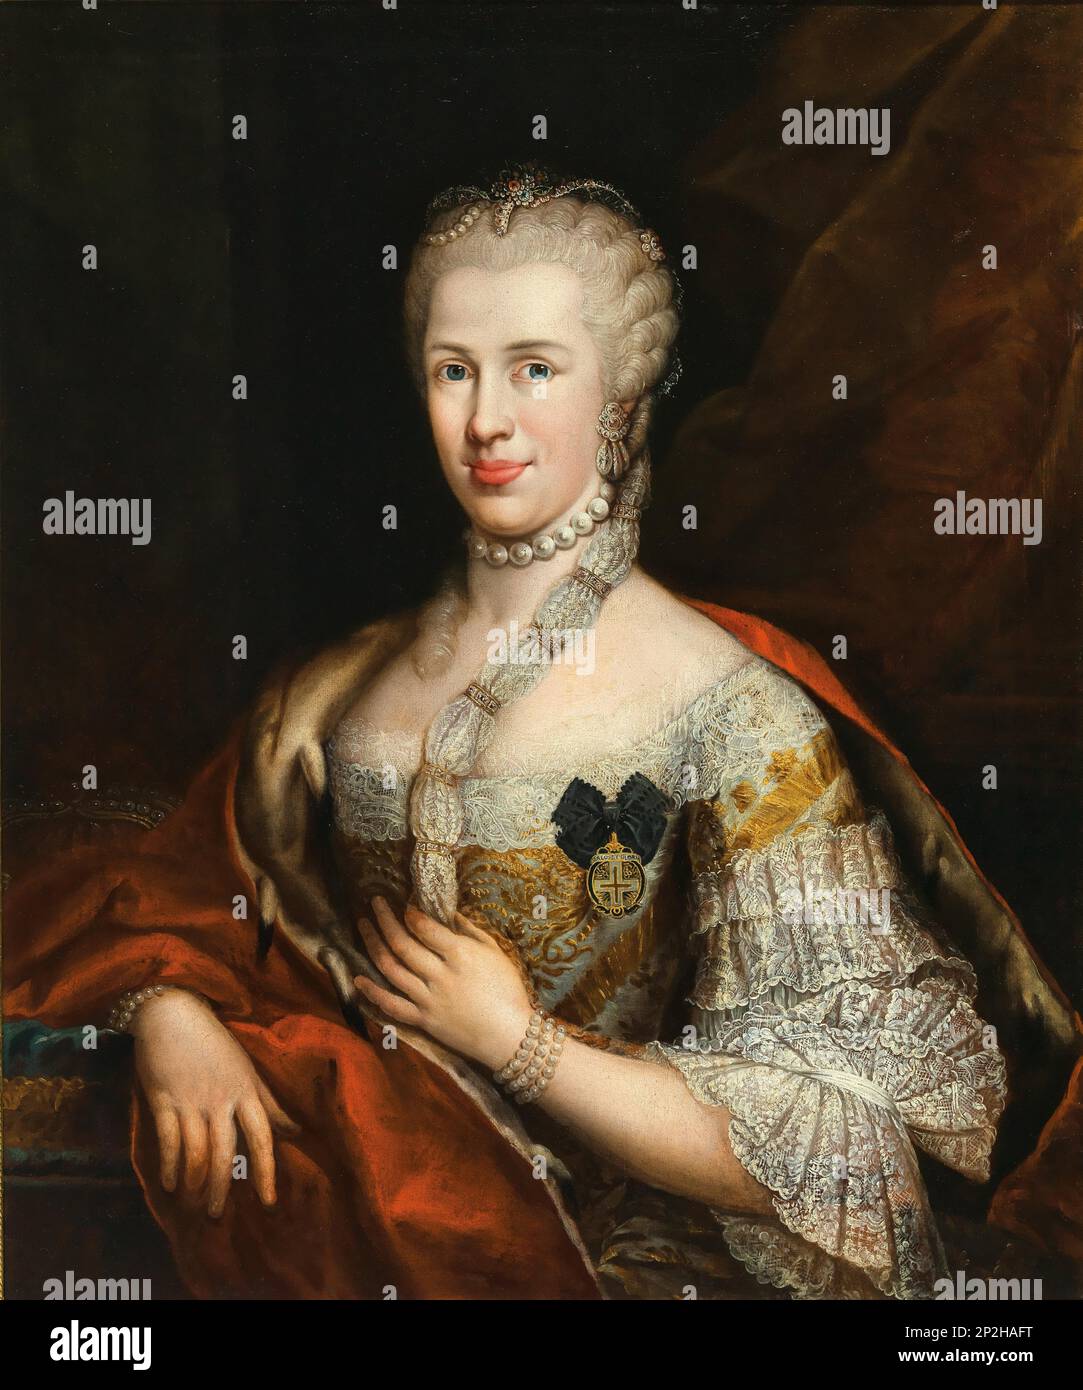 Portrait der spanischen Infanta Maria Luisa (1745-1792), Heilige römische Kaiserin, mit der Sternenkreuz-Ordnung. Private Sammlung. Stockfoto